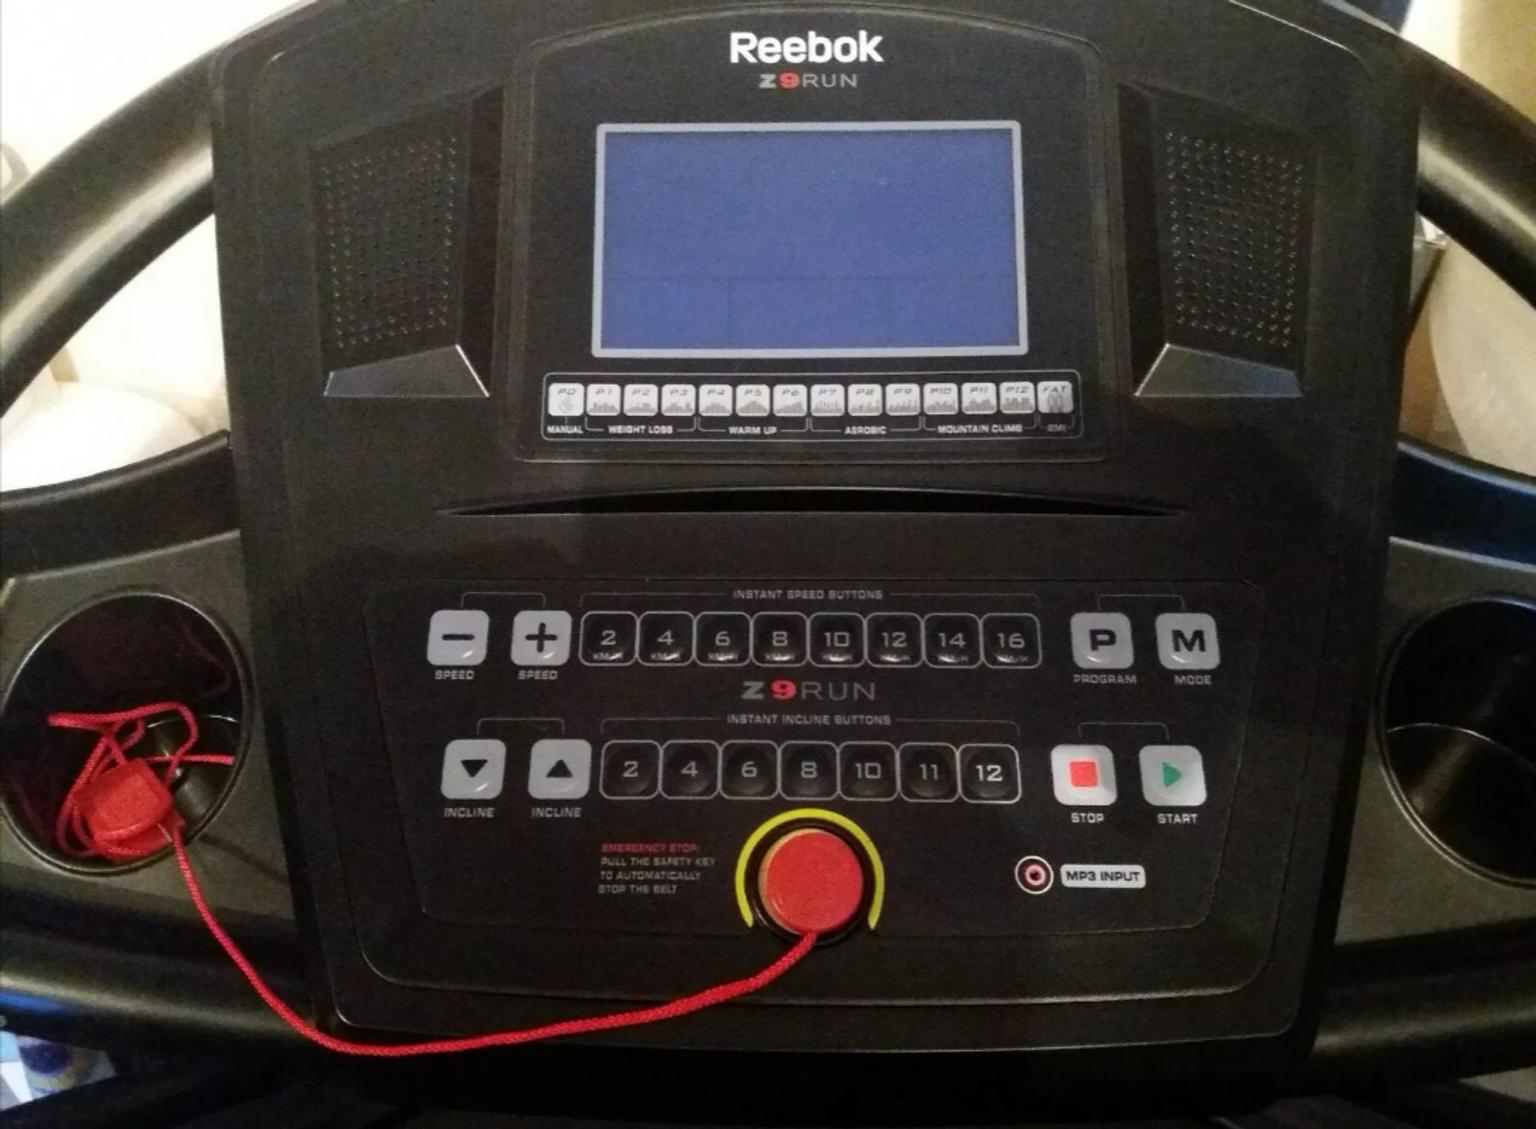 Reebok Z9 Run Treadmill in CR7 Croydon 